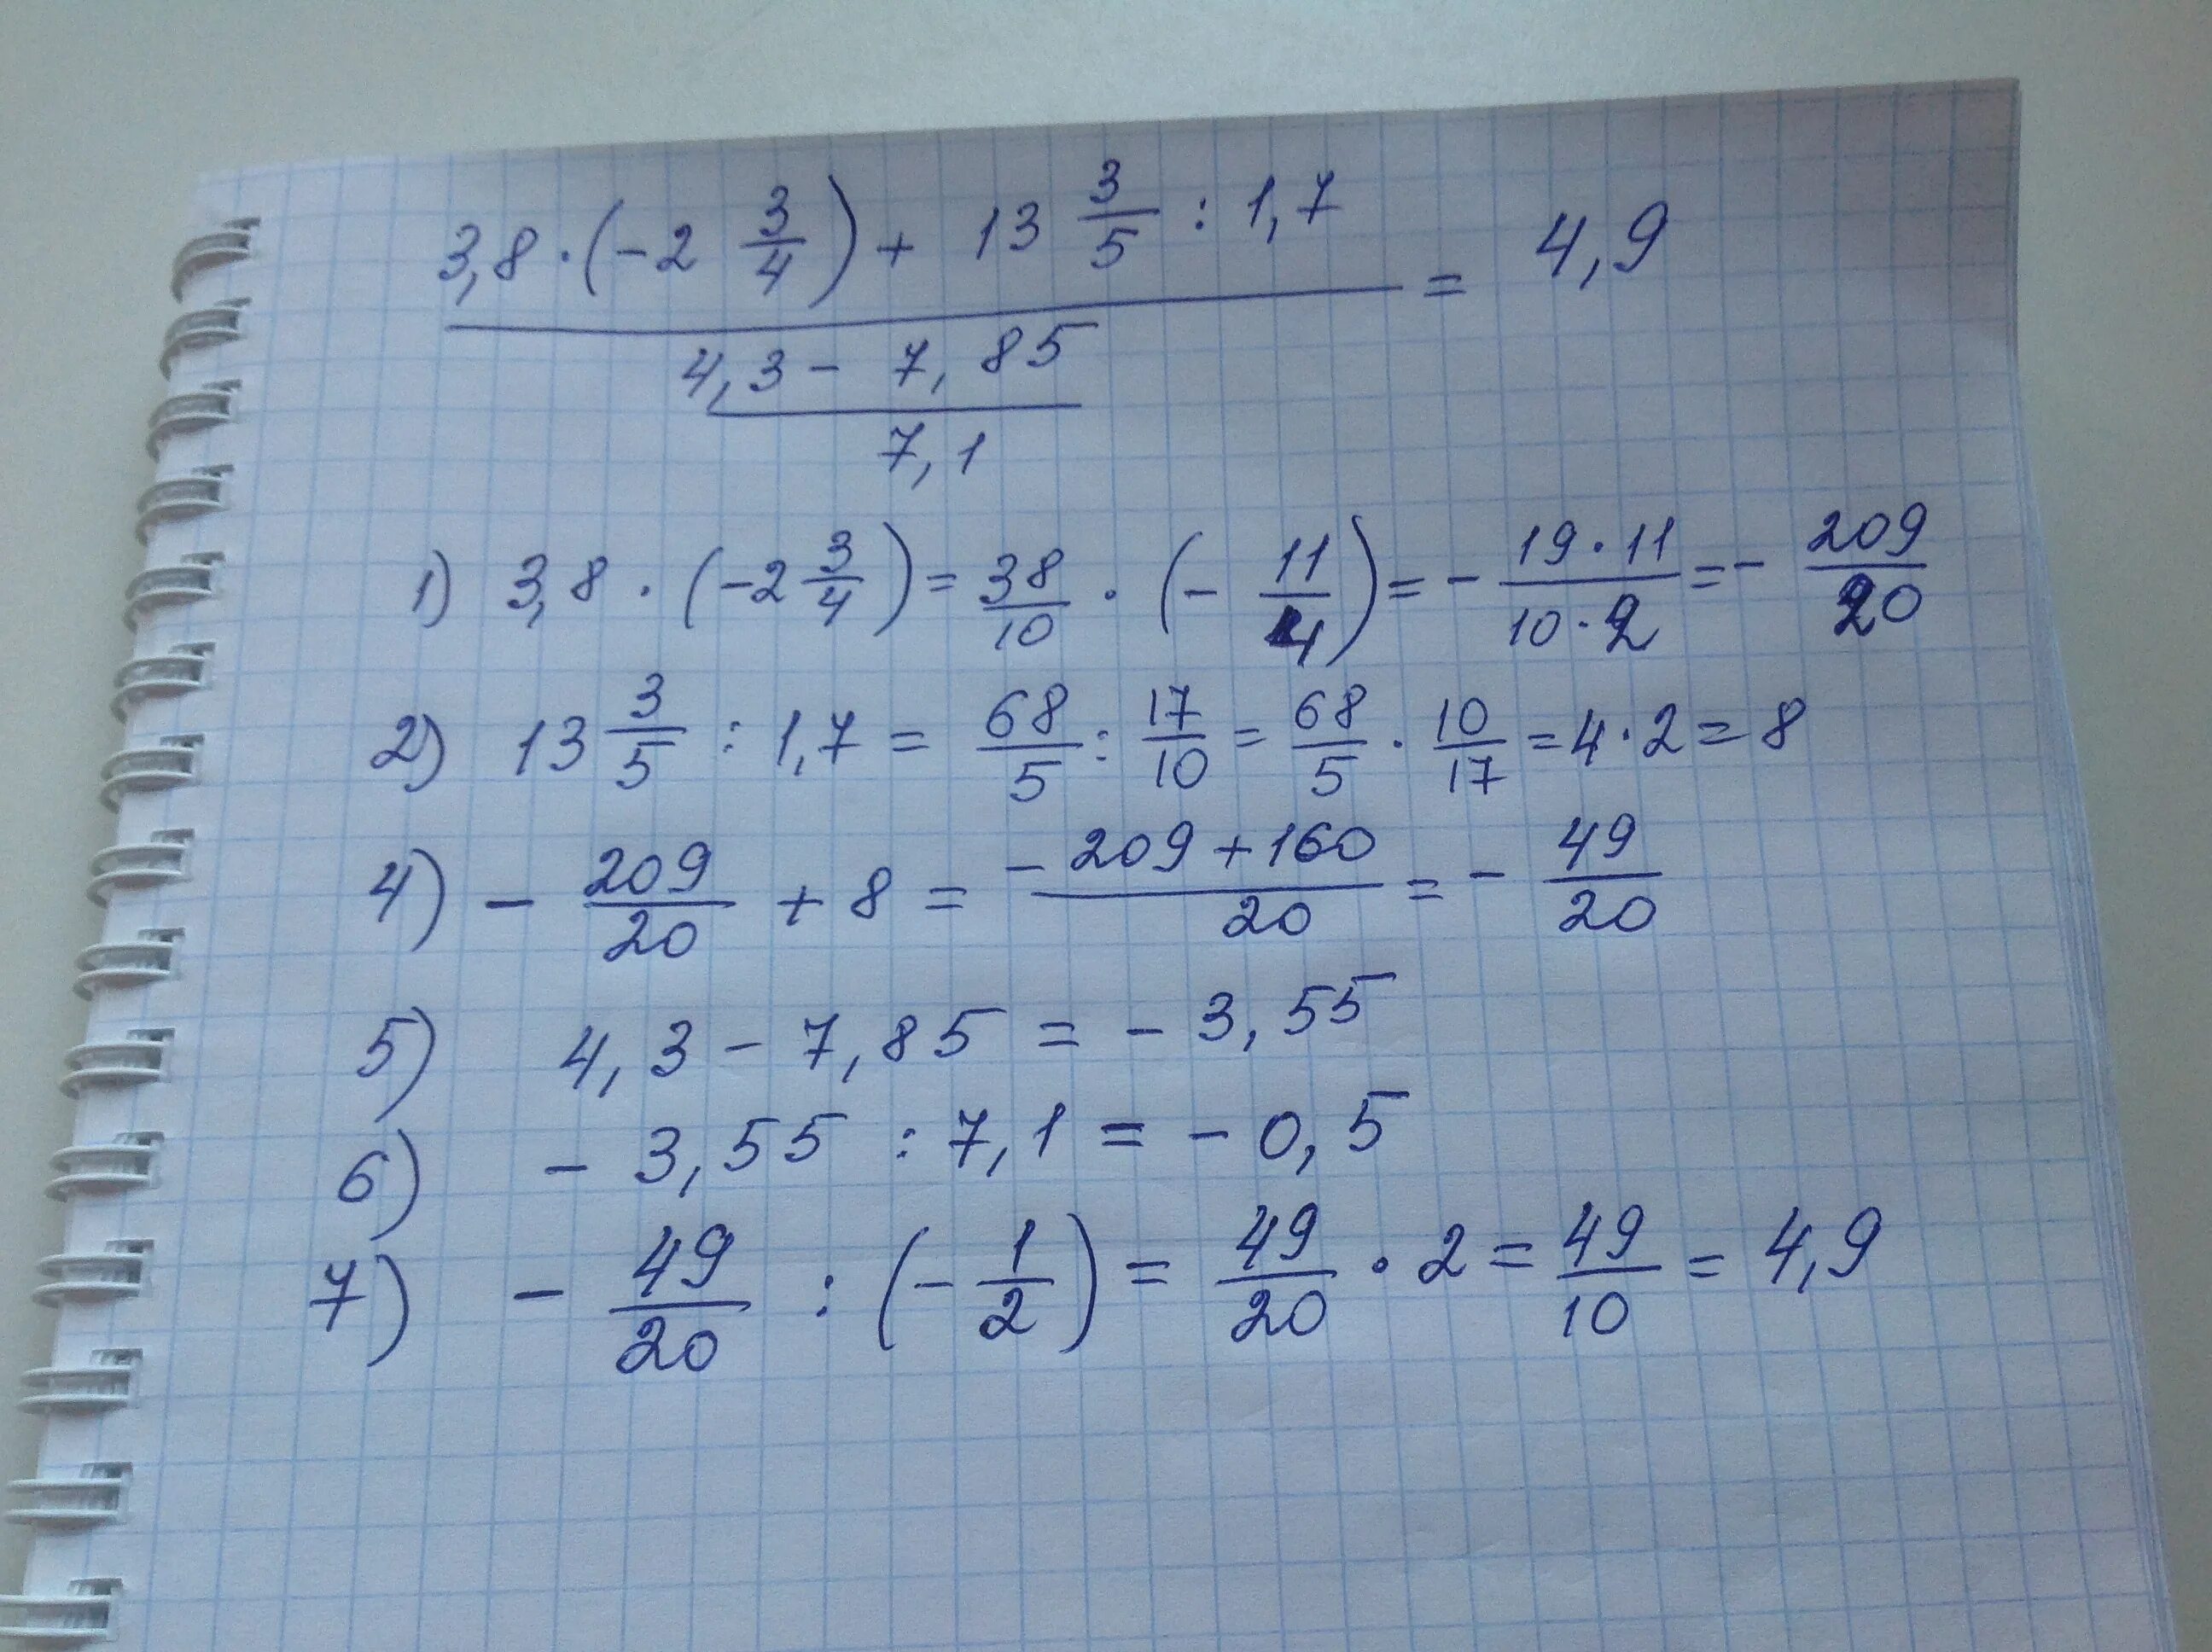 Вычислите 11 28 3 28. Вычислите 6 1/8-2 3/4. [-0.9-2.5-(8.2)]*(0.625). Вычислите 2/7+3/8. Вычислите 5/6+3/6.